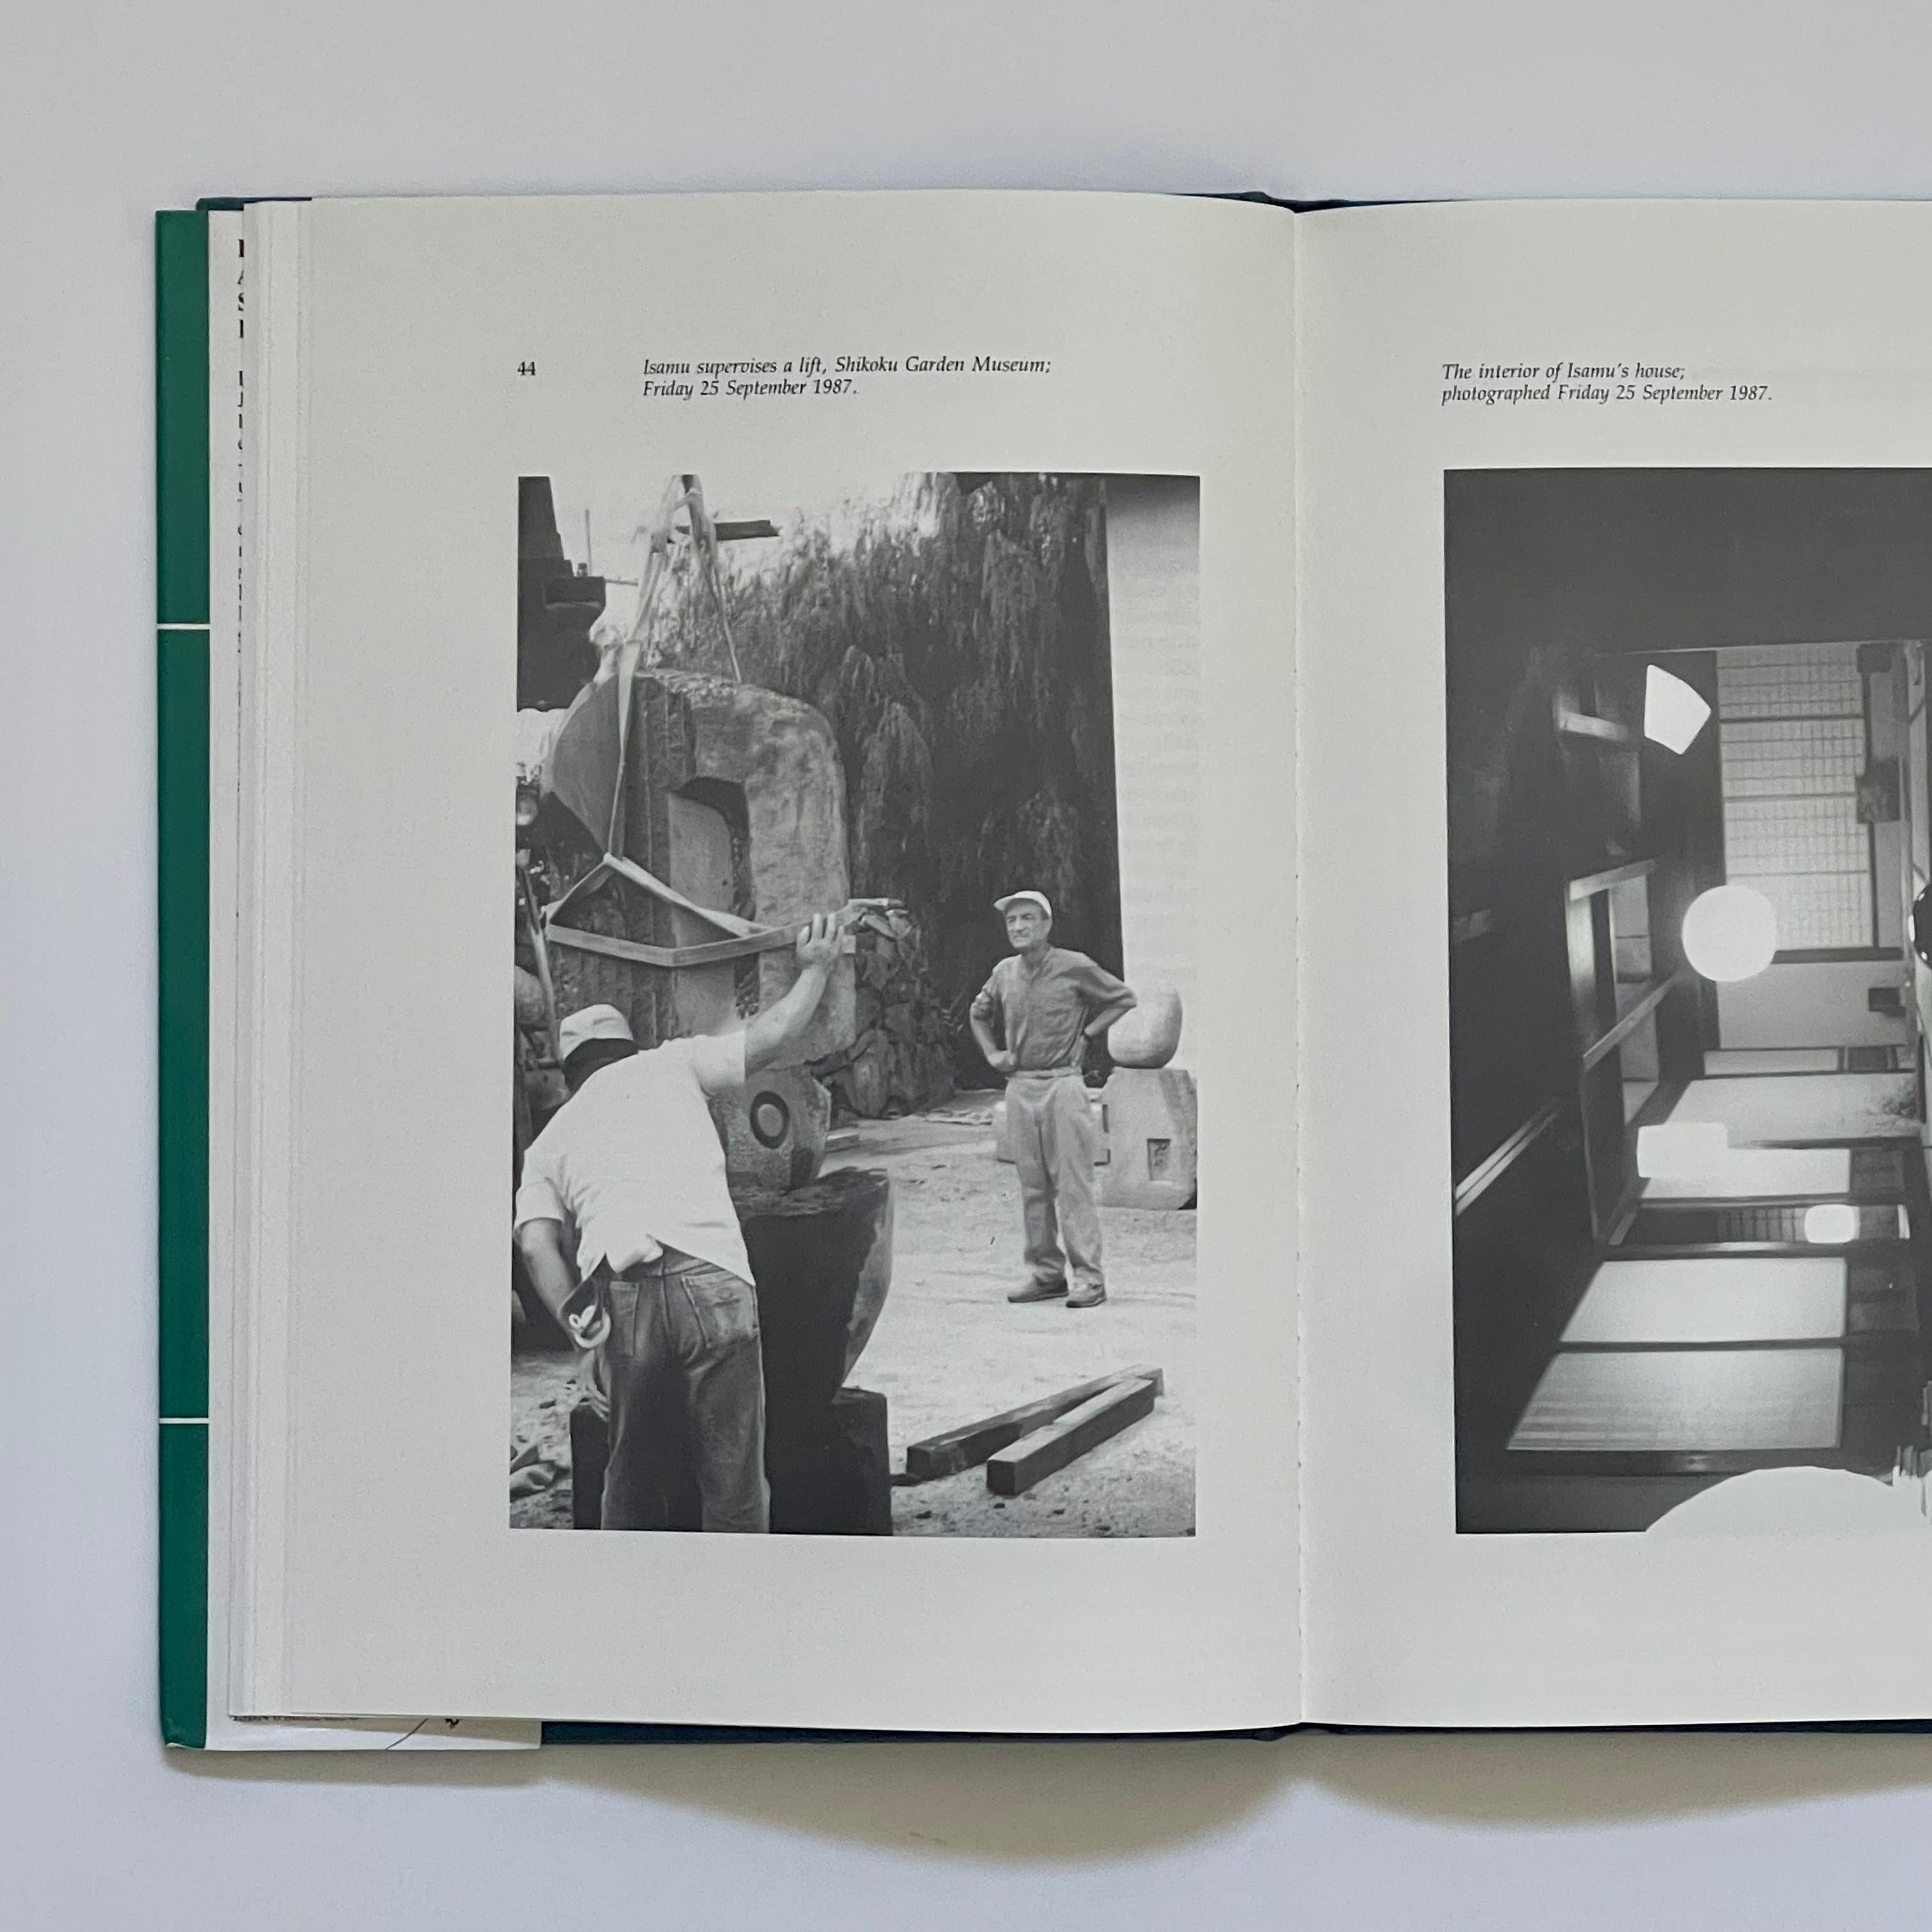 Première édition, publiée par Seagull Books, Sussex, Angleterre 1992.

Une étude de la pratique d'Isamu Noguchi par le célèbre sculpteur Tim Threlfall, qui explore certains des éléments - tels que la collaboration, l'environnement et l'humanisme -